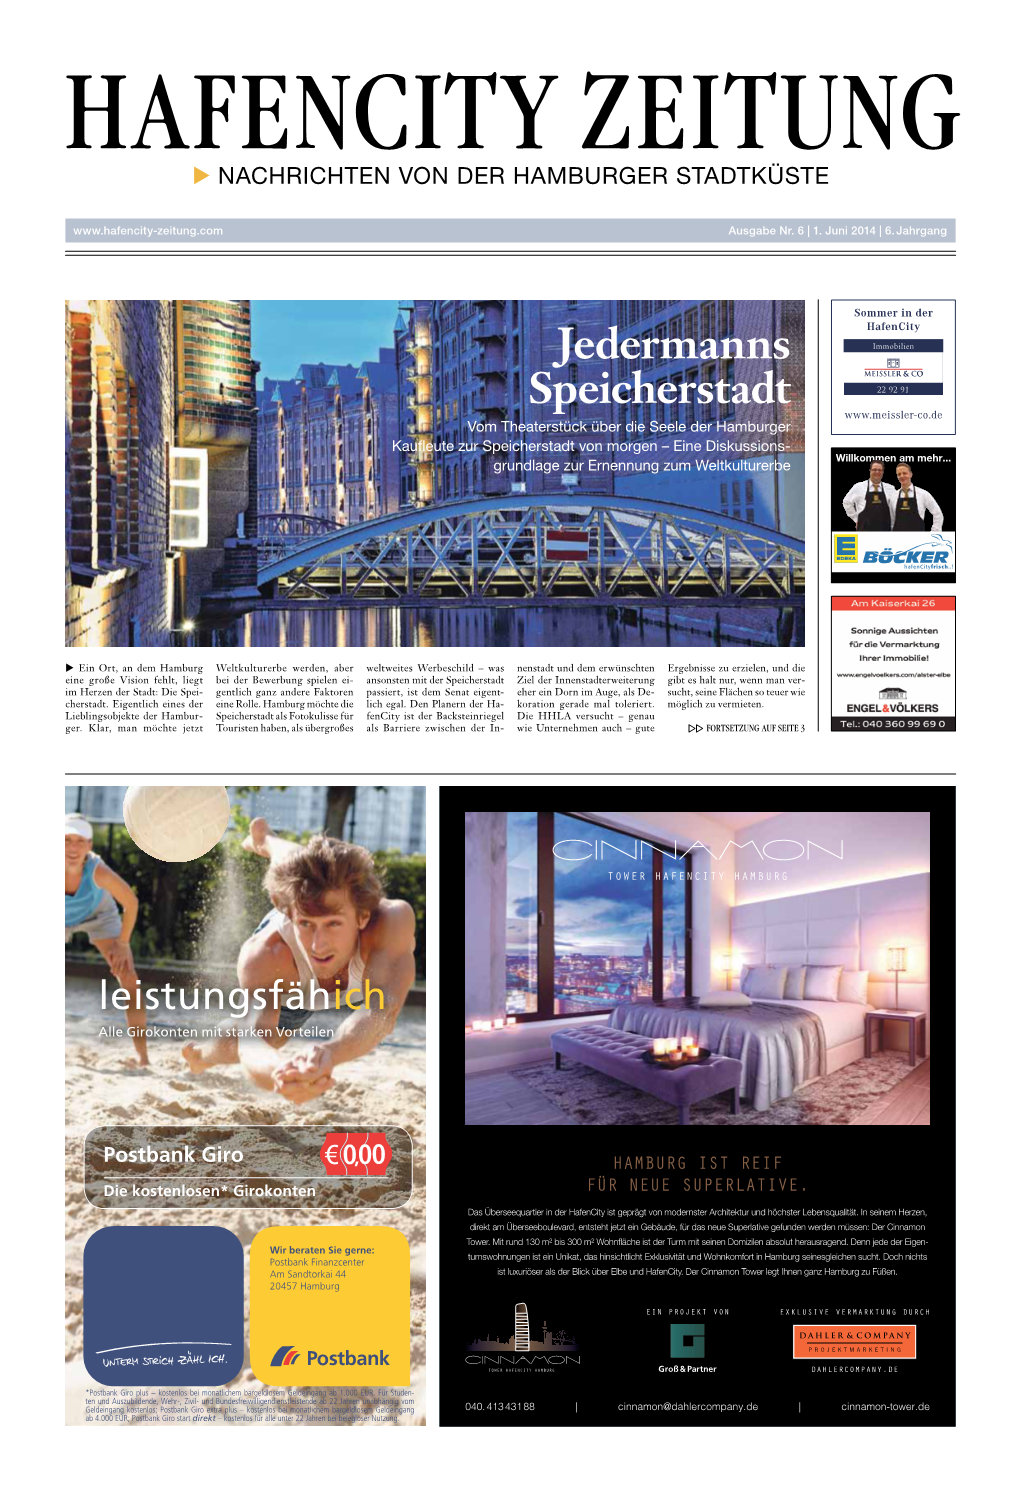 Hafencity Zeitung  Nachrichten Von Der Hamburger Stadtküste